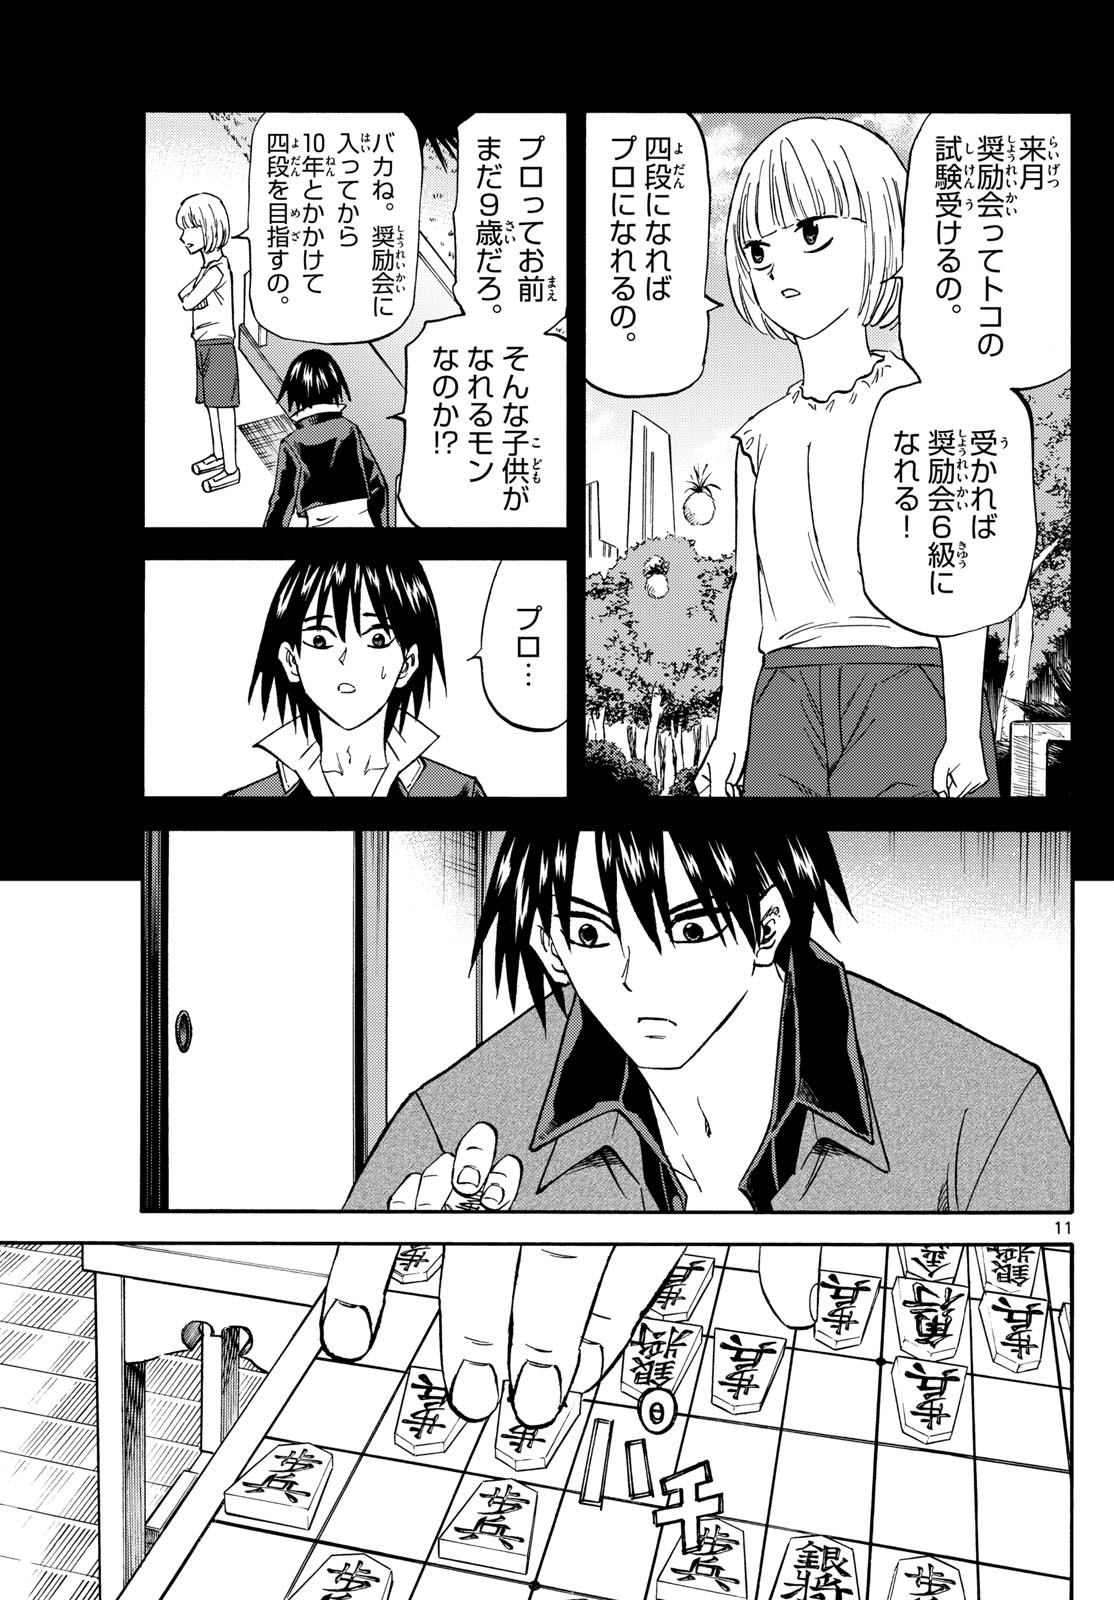 Tatsu to Ichigo - Chapter 193 - Page 11